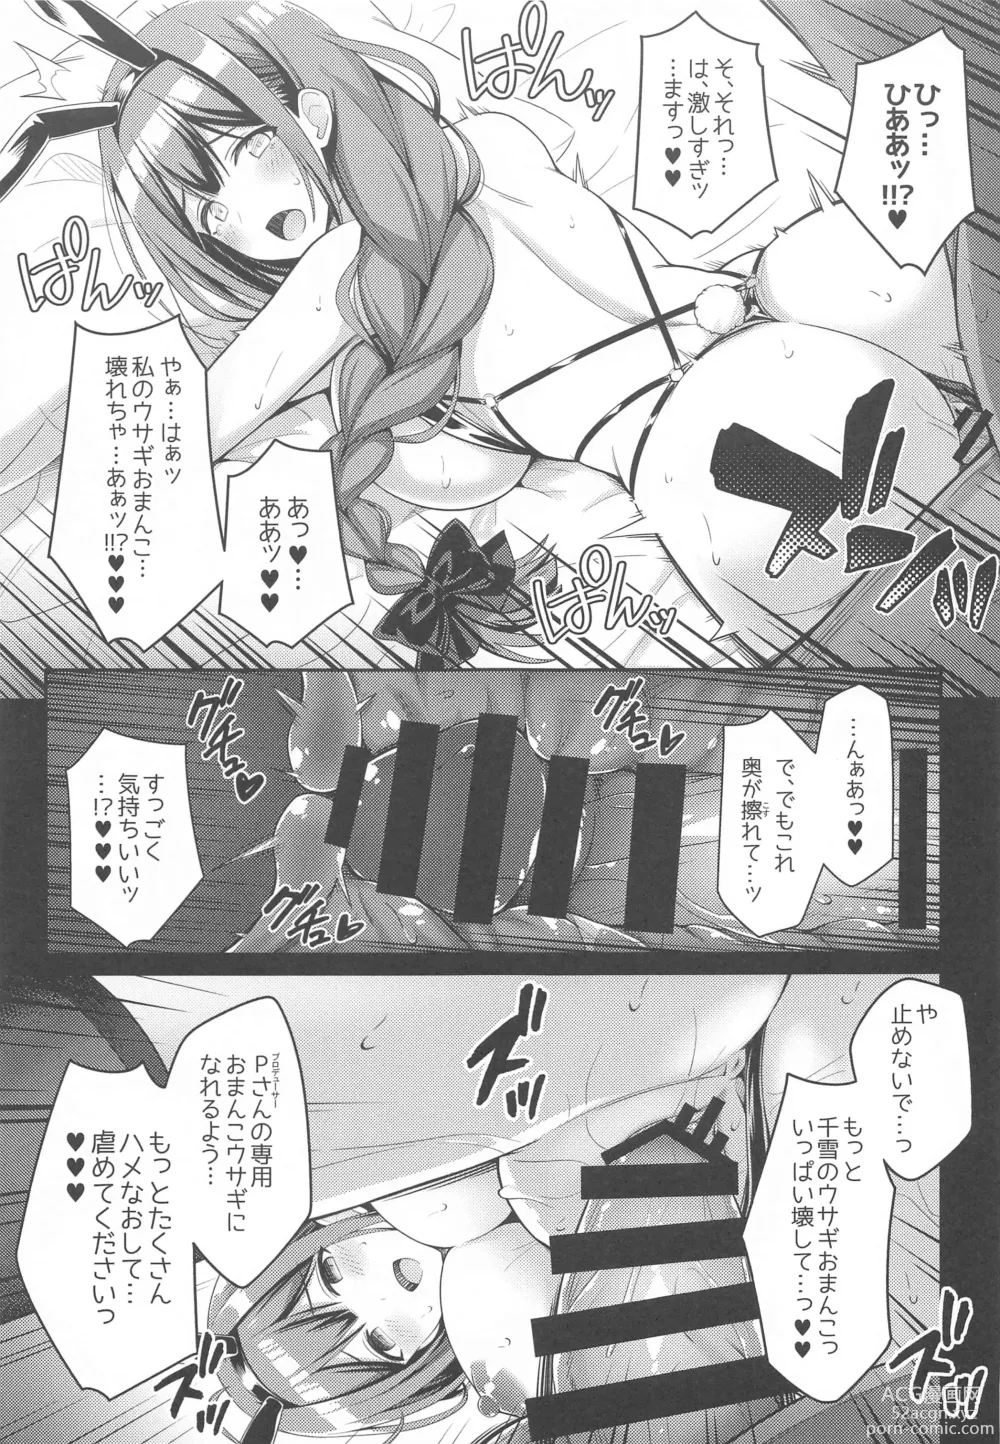 Page 12 of doujinshi 283 Kaiinsei Koukyuu Chijo Toku SS++ Himitsu Chika Idol  Bunny Club  -Chiyuki-